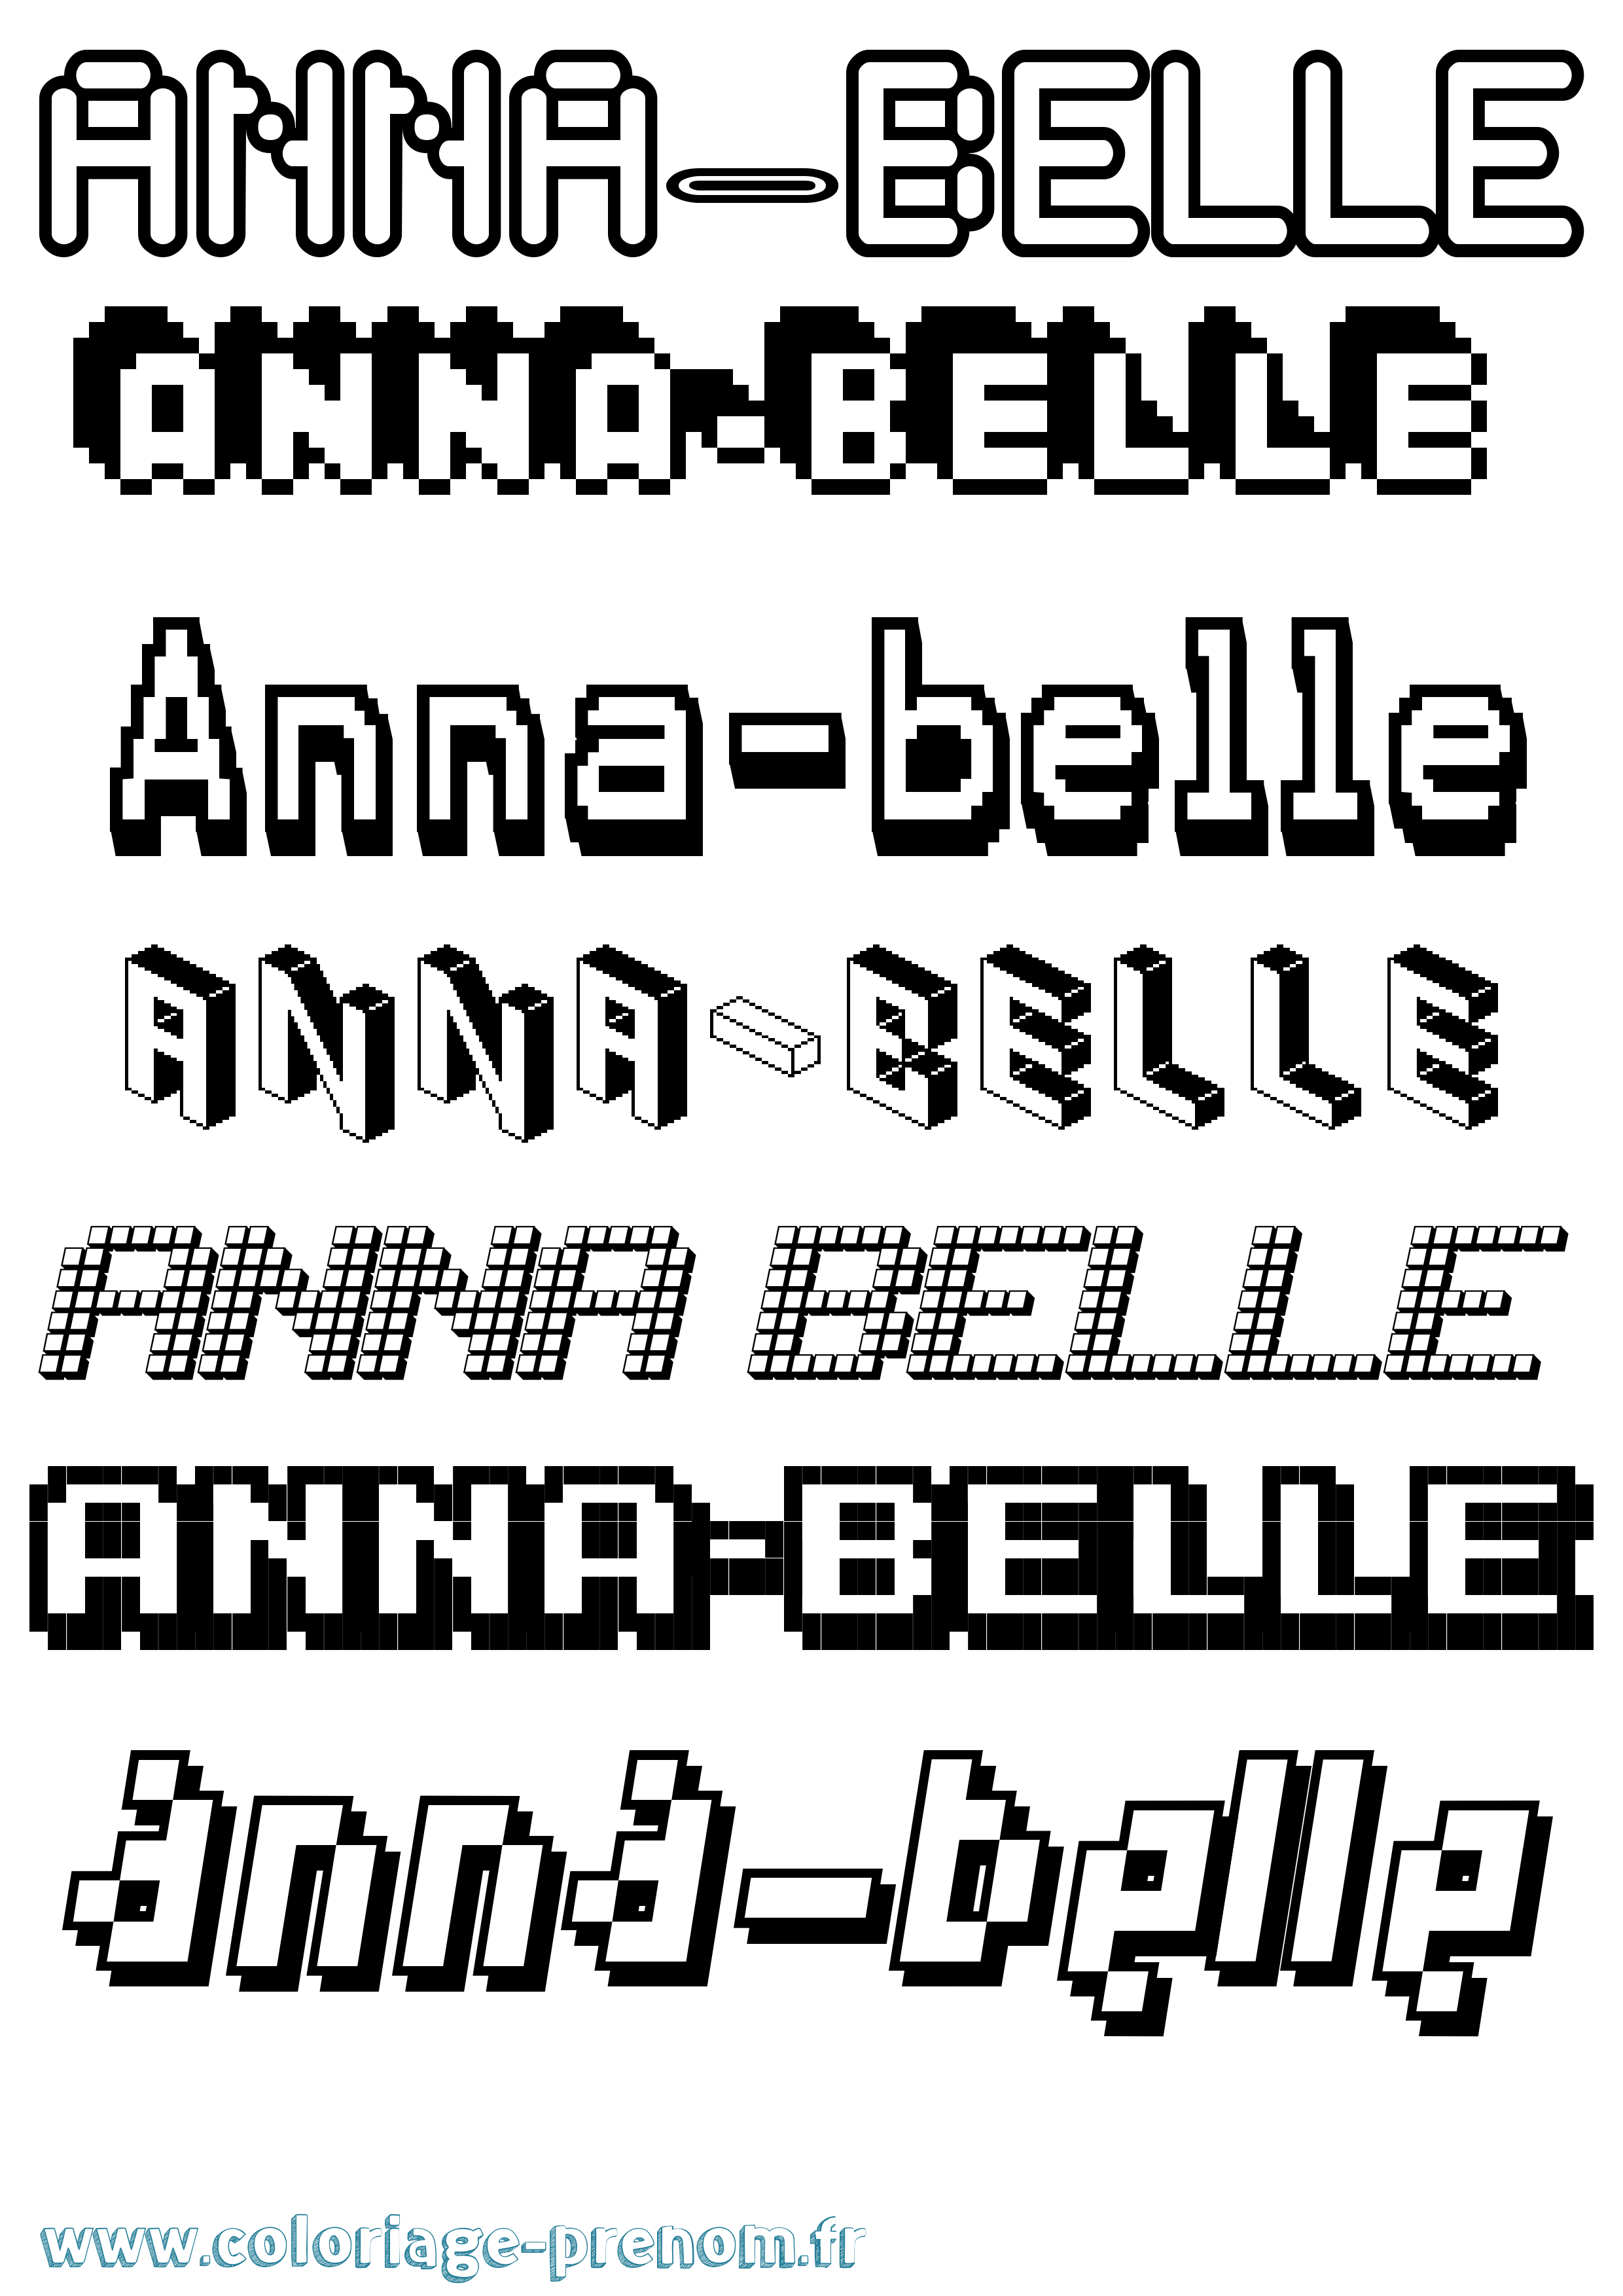 Coloriage prénom Anna-Belle Pixel